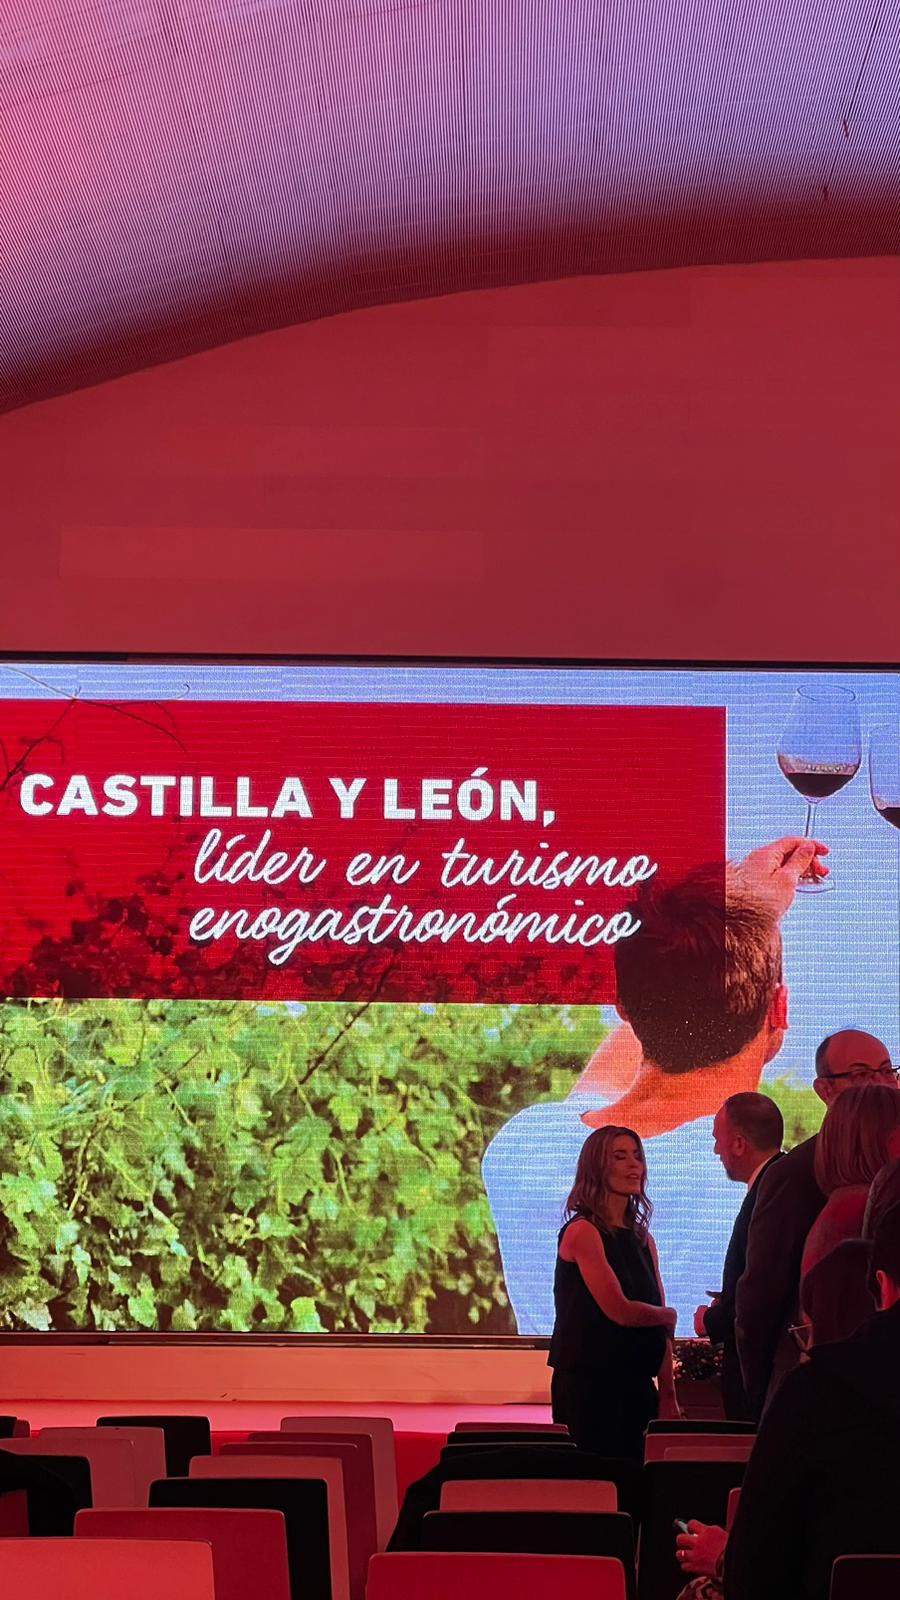 Mañueco reivindica Castilla y León como destino líder en turismo enogastronómico en un acto en Madrid